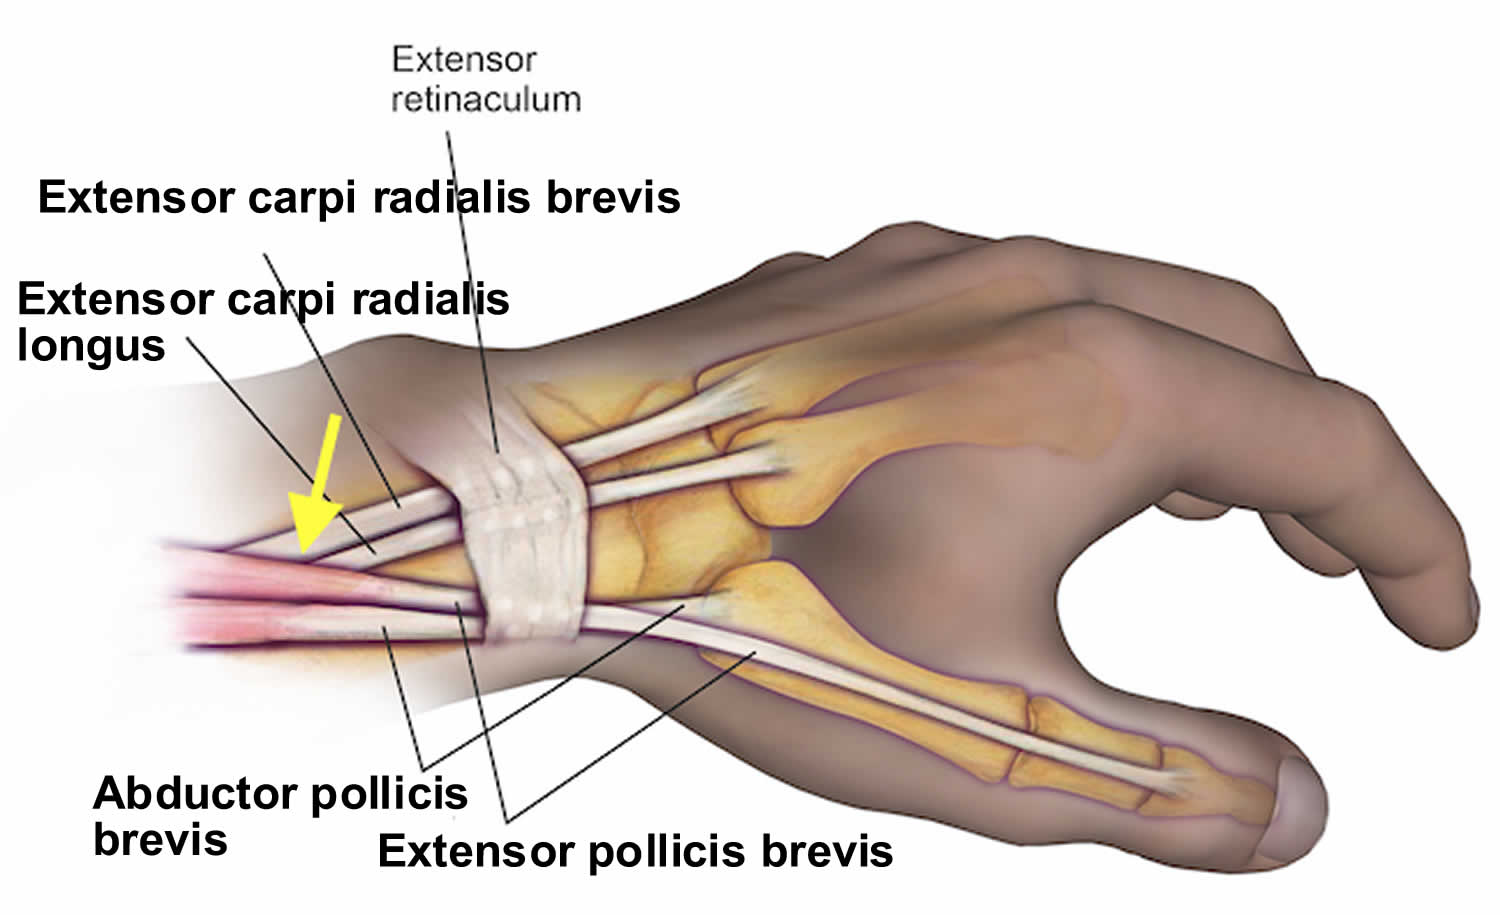 proximal intersection syndrome súlyos ízületi fájdalom különösen a kezekben